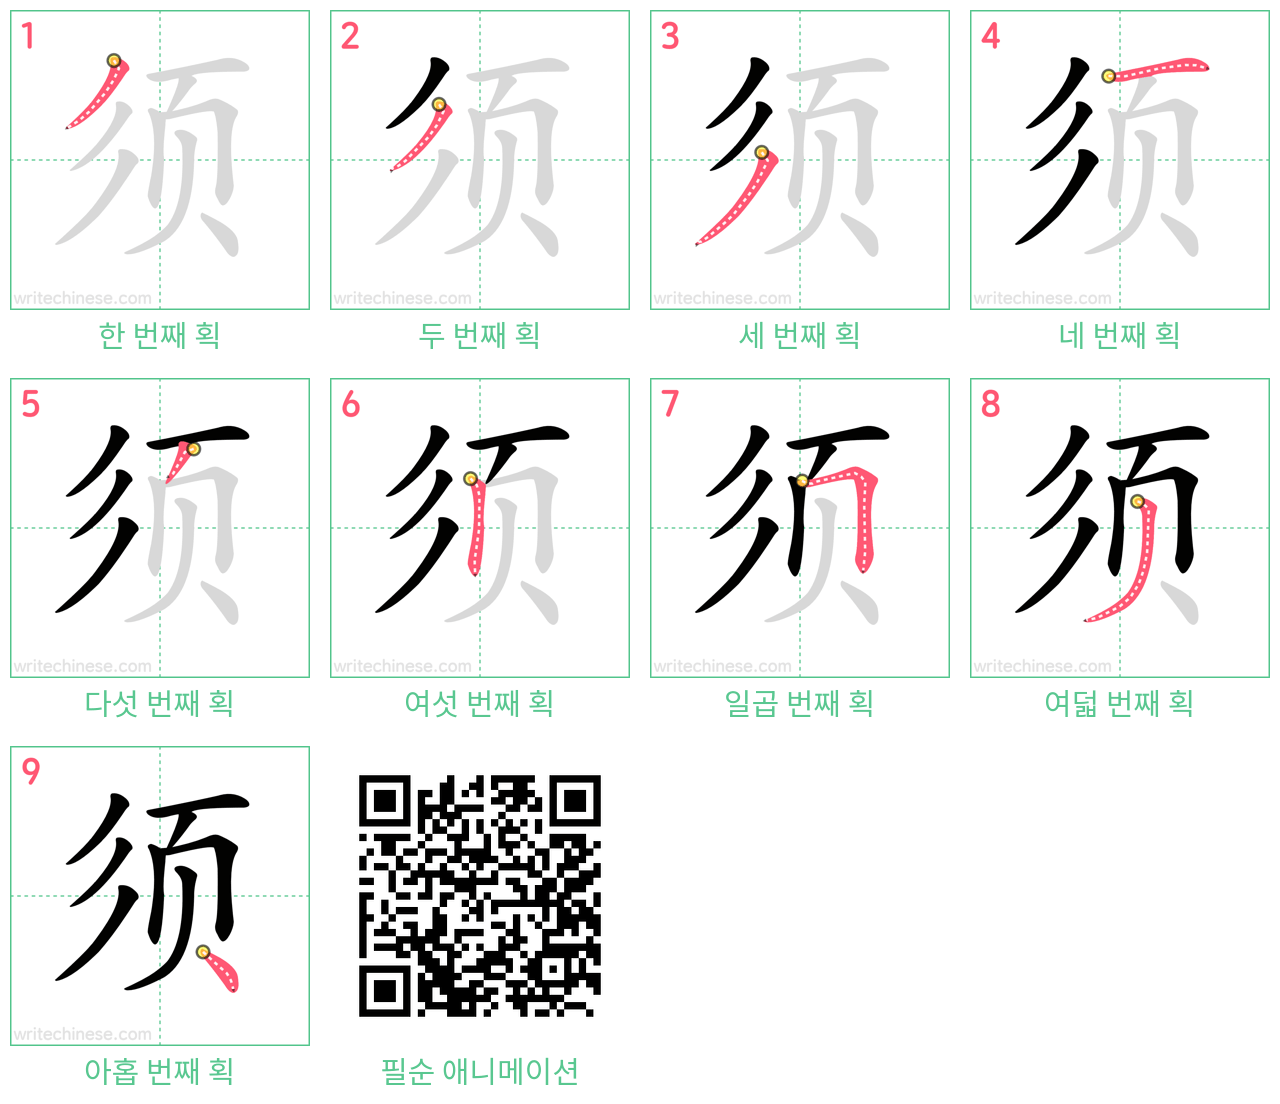 须 step-by-step stroke order diagrams